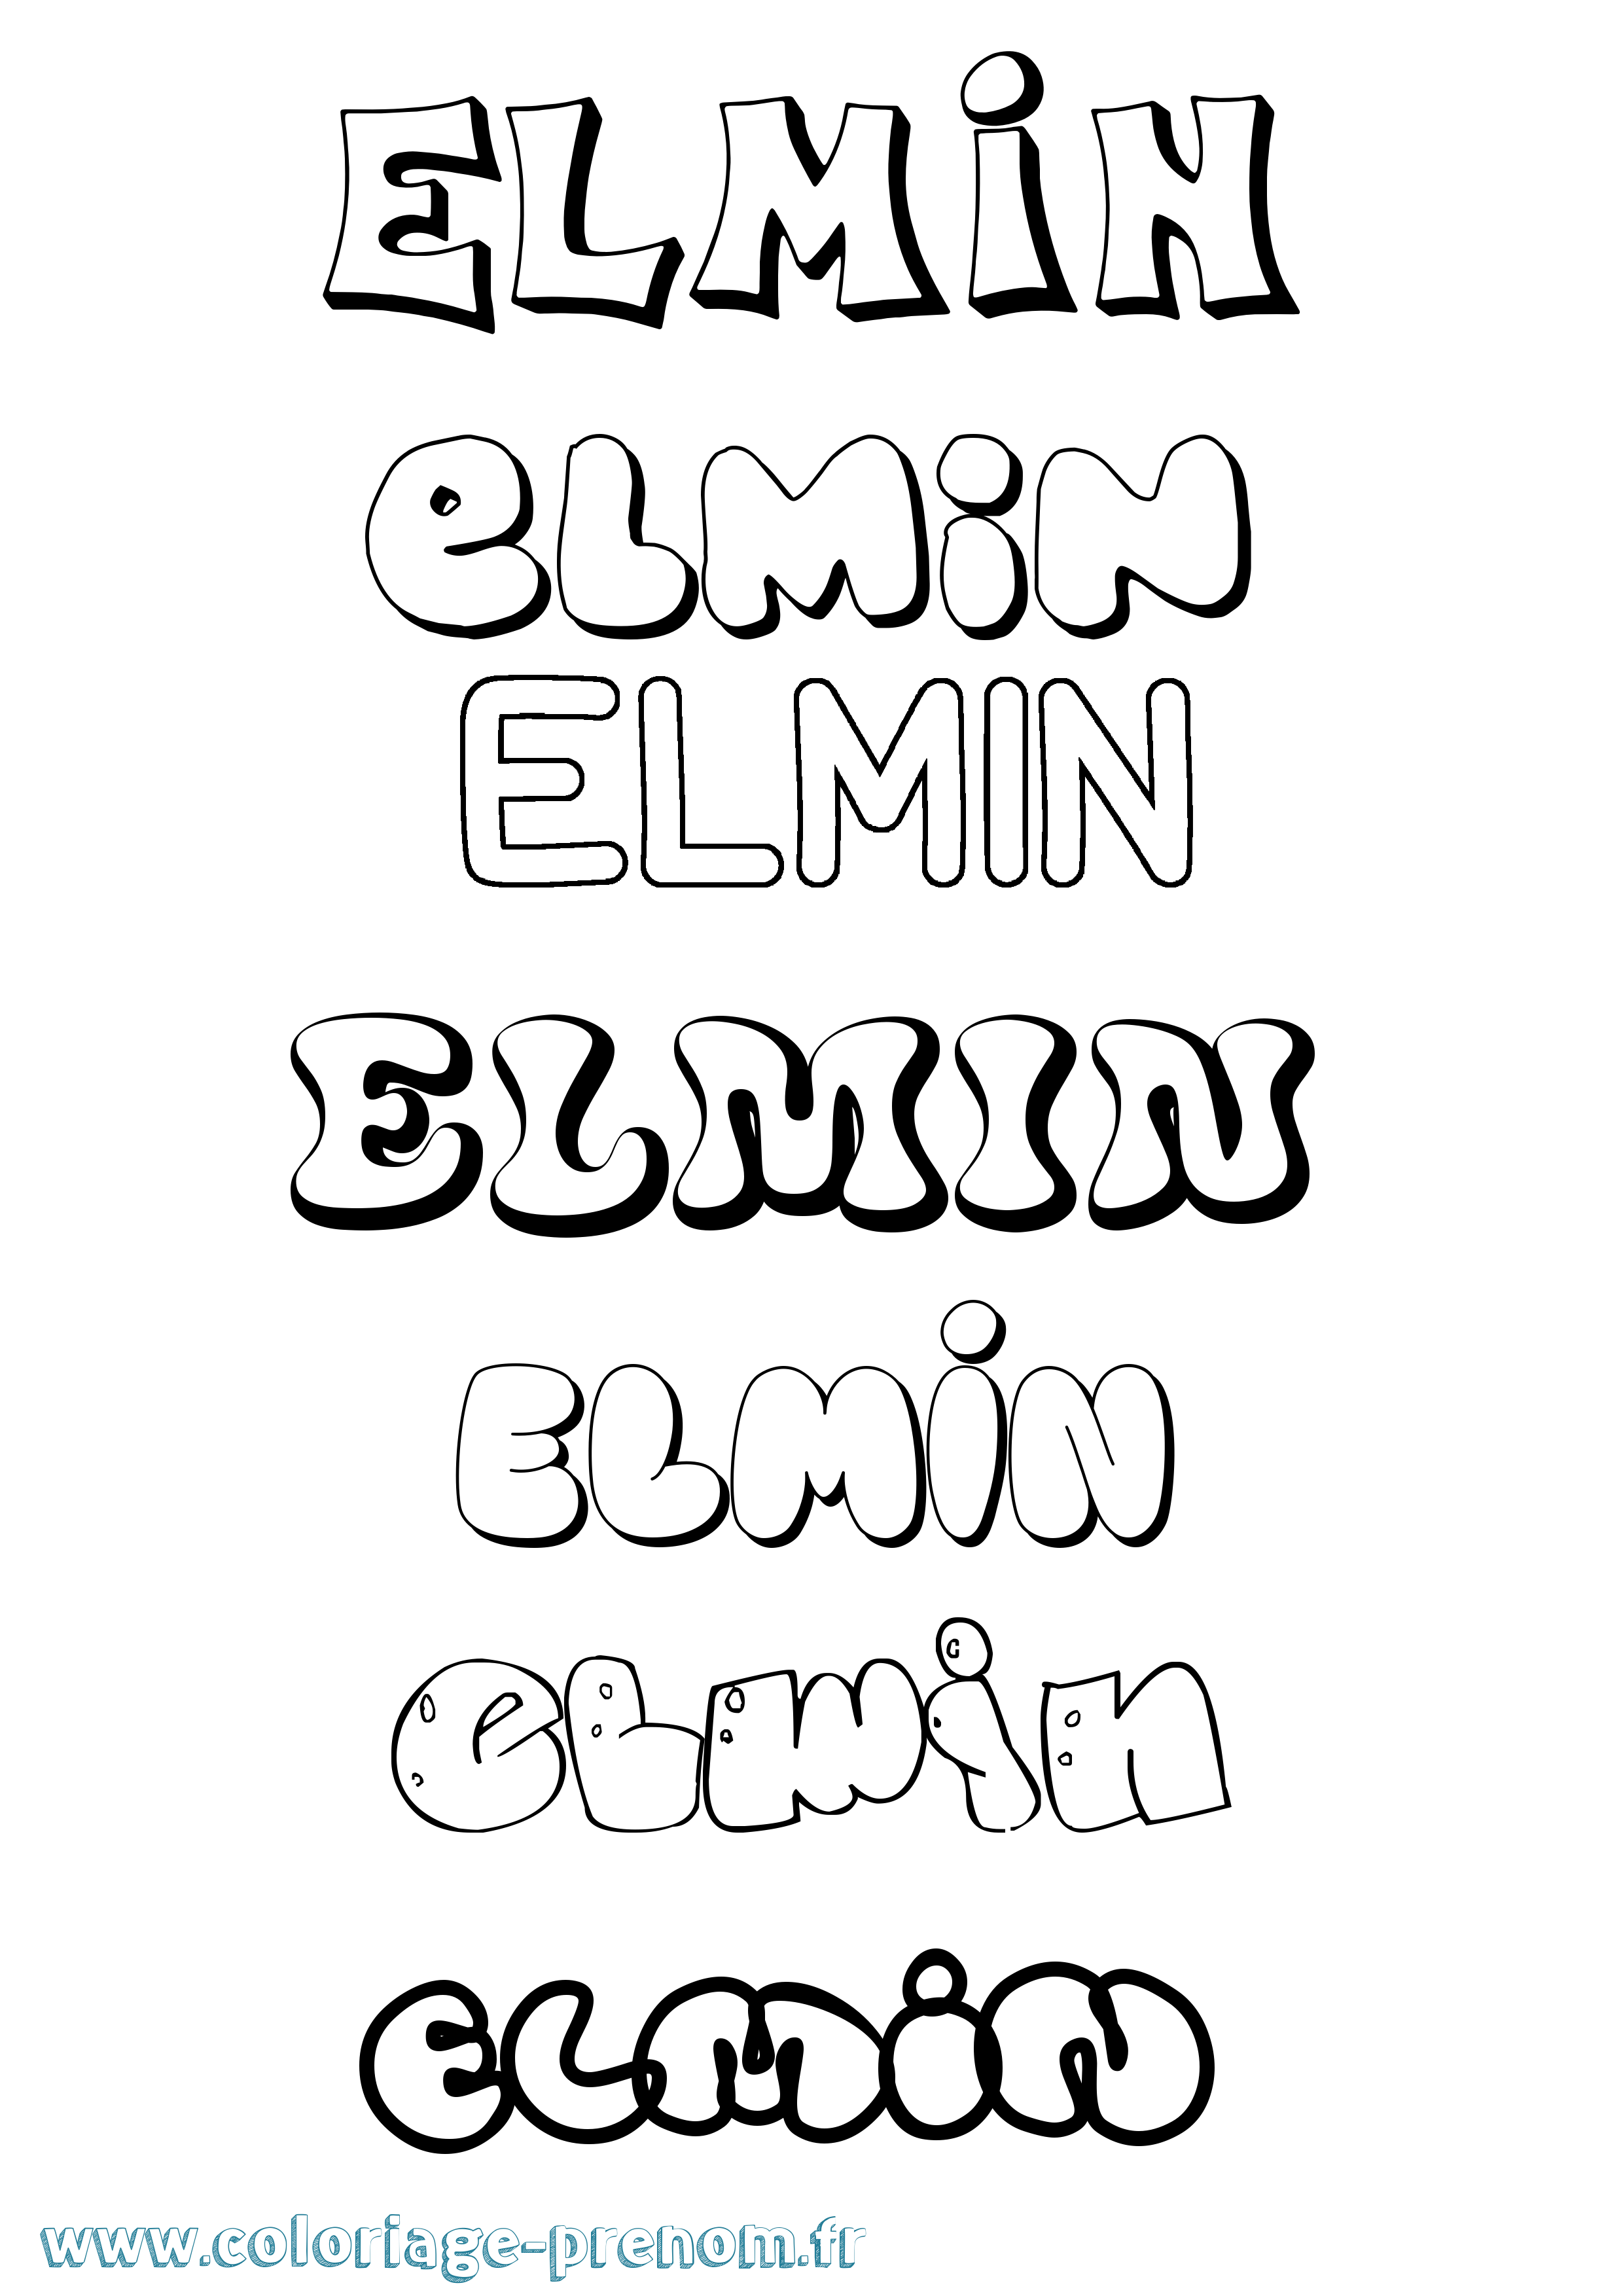 Coloriage prénom Elmin Bubble